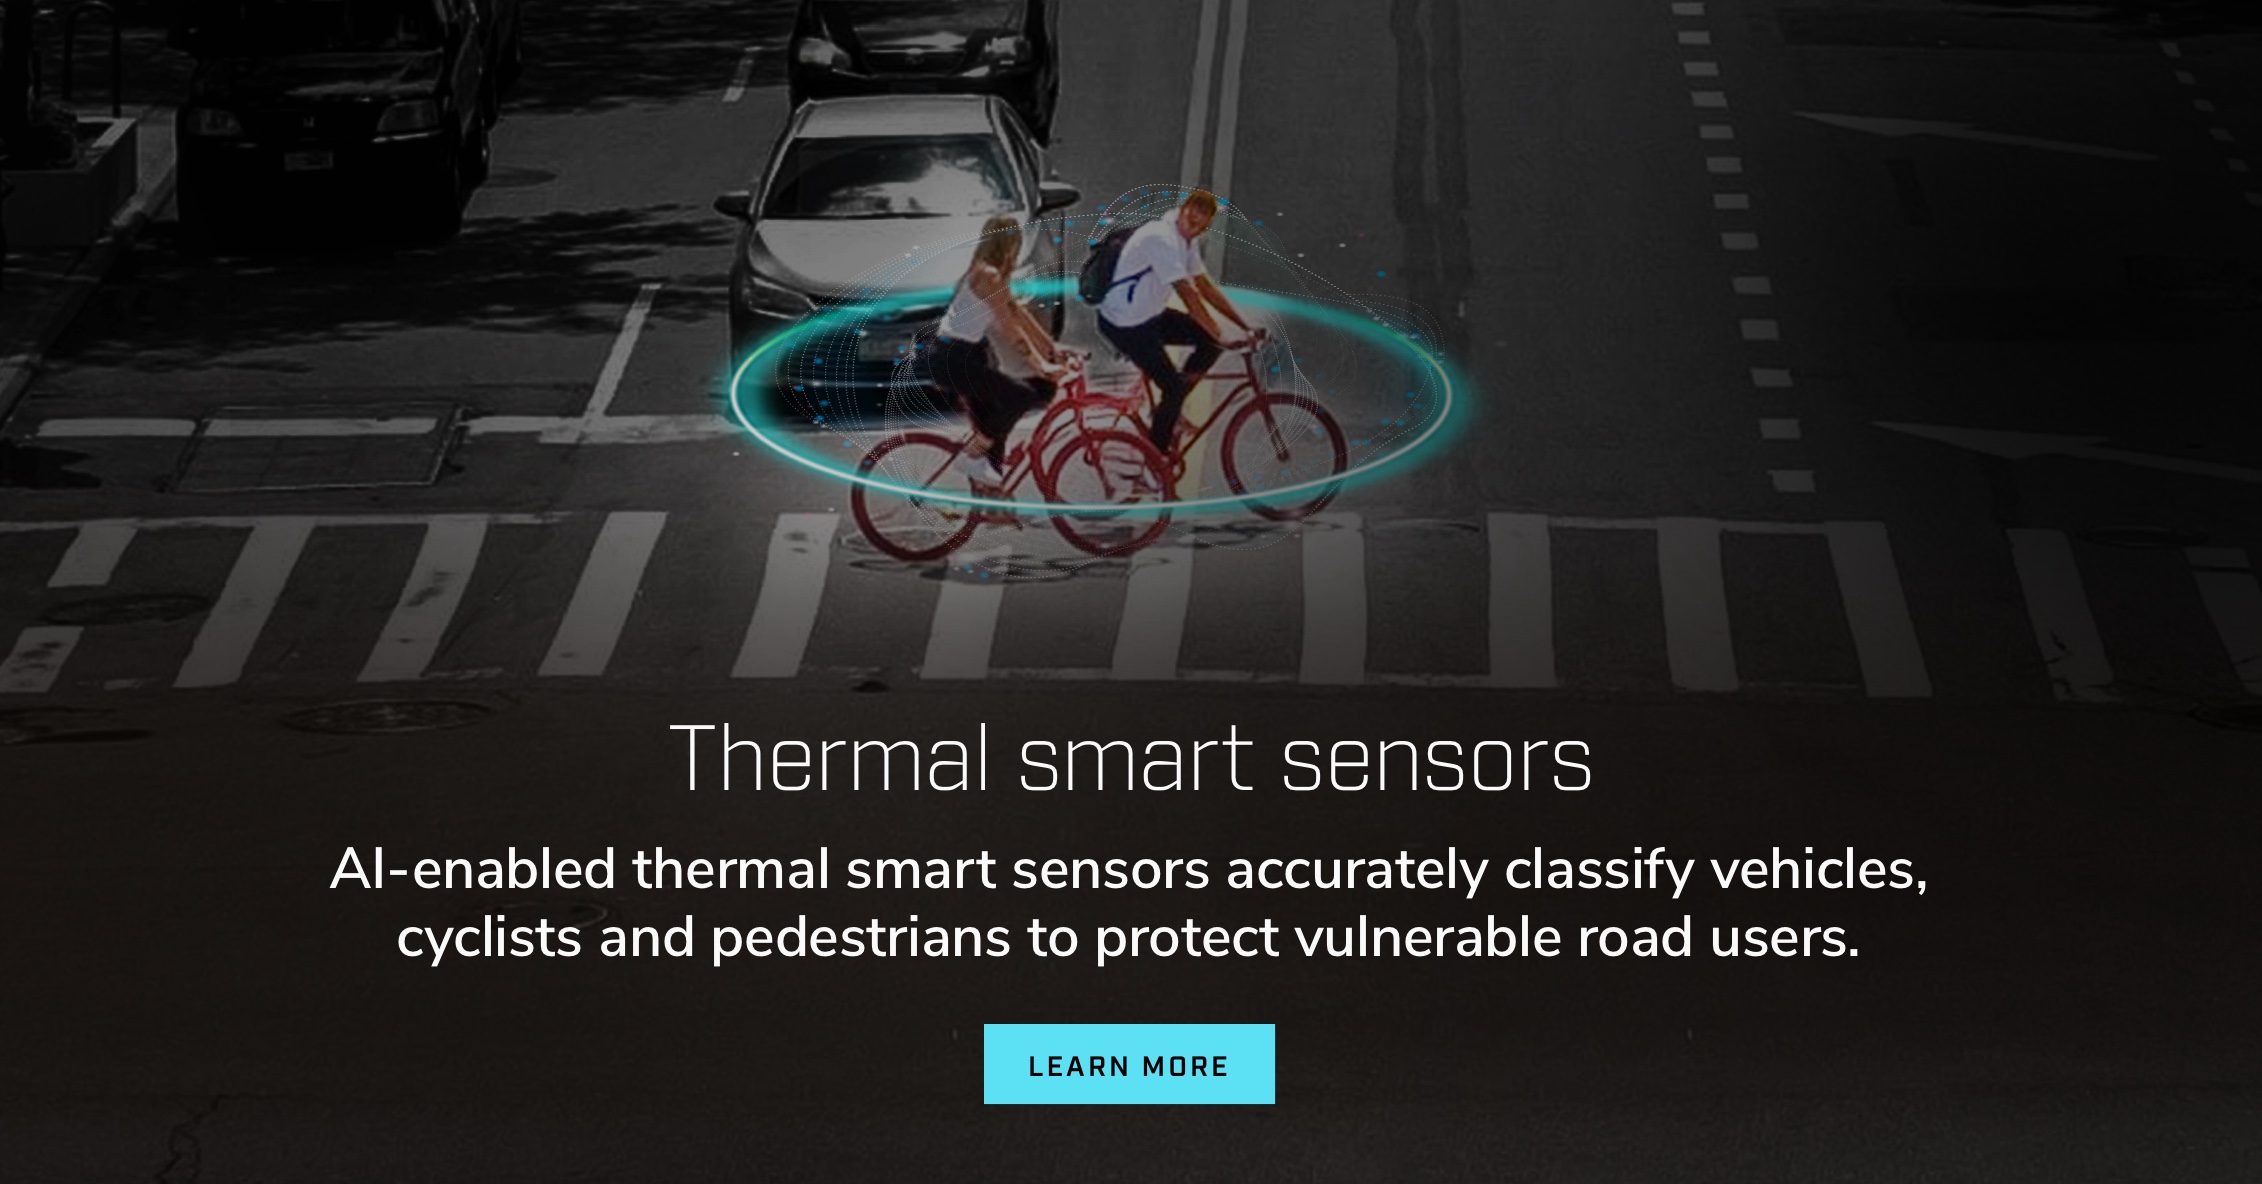 Sensori termici intelligenti. I sensori termici intelligenti abilitati all’intelligenza artificiale classificano accuratamente veicoli, ciclisti e pedoni per proteggere gli utenti vulnerabili della strada.